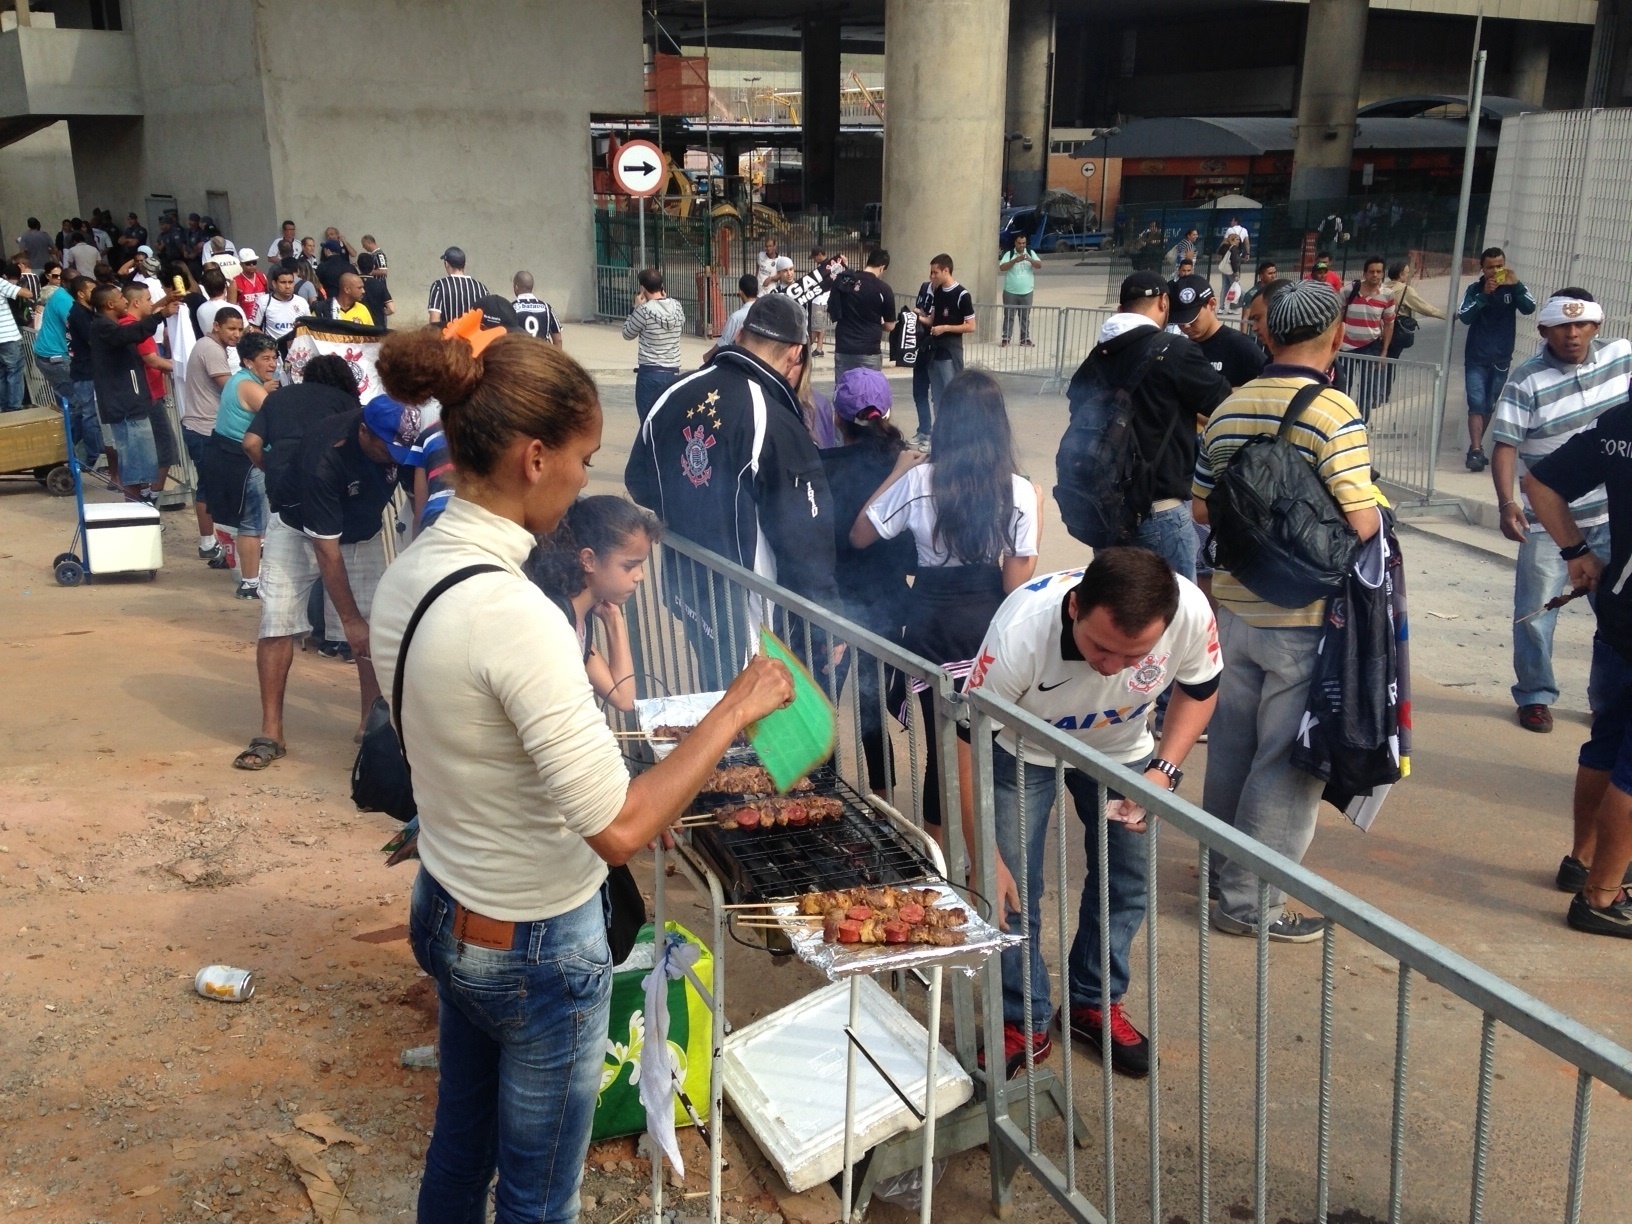 18.mai.2014 - Ambulante vende churrasco para torcedores do Corinthians que saem da estação Corinthians-Itaquera no dia da inauguração do Itaquerão